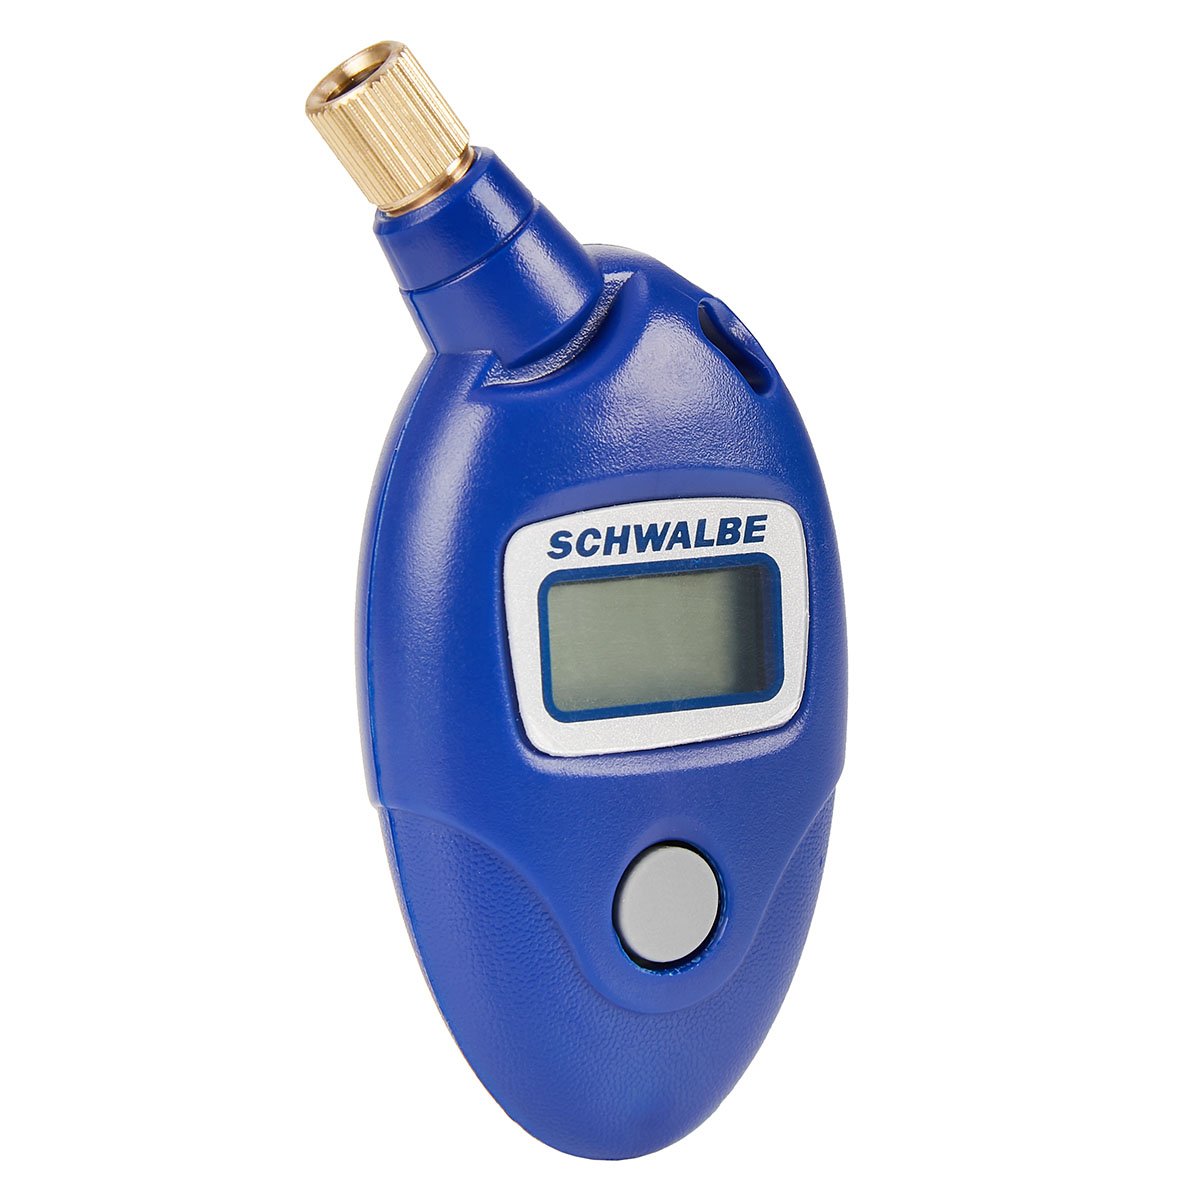 Schwalbe Luftdruckprüfer Airmax Pro Digital, Presta/Schrader